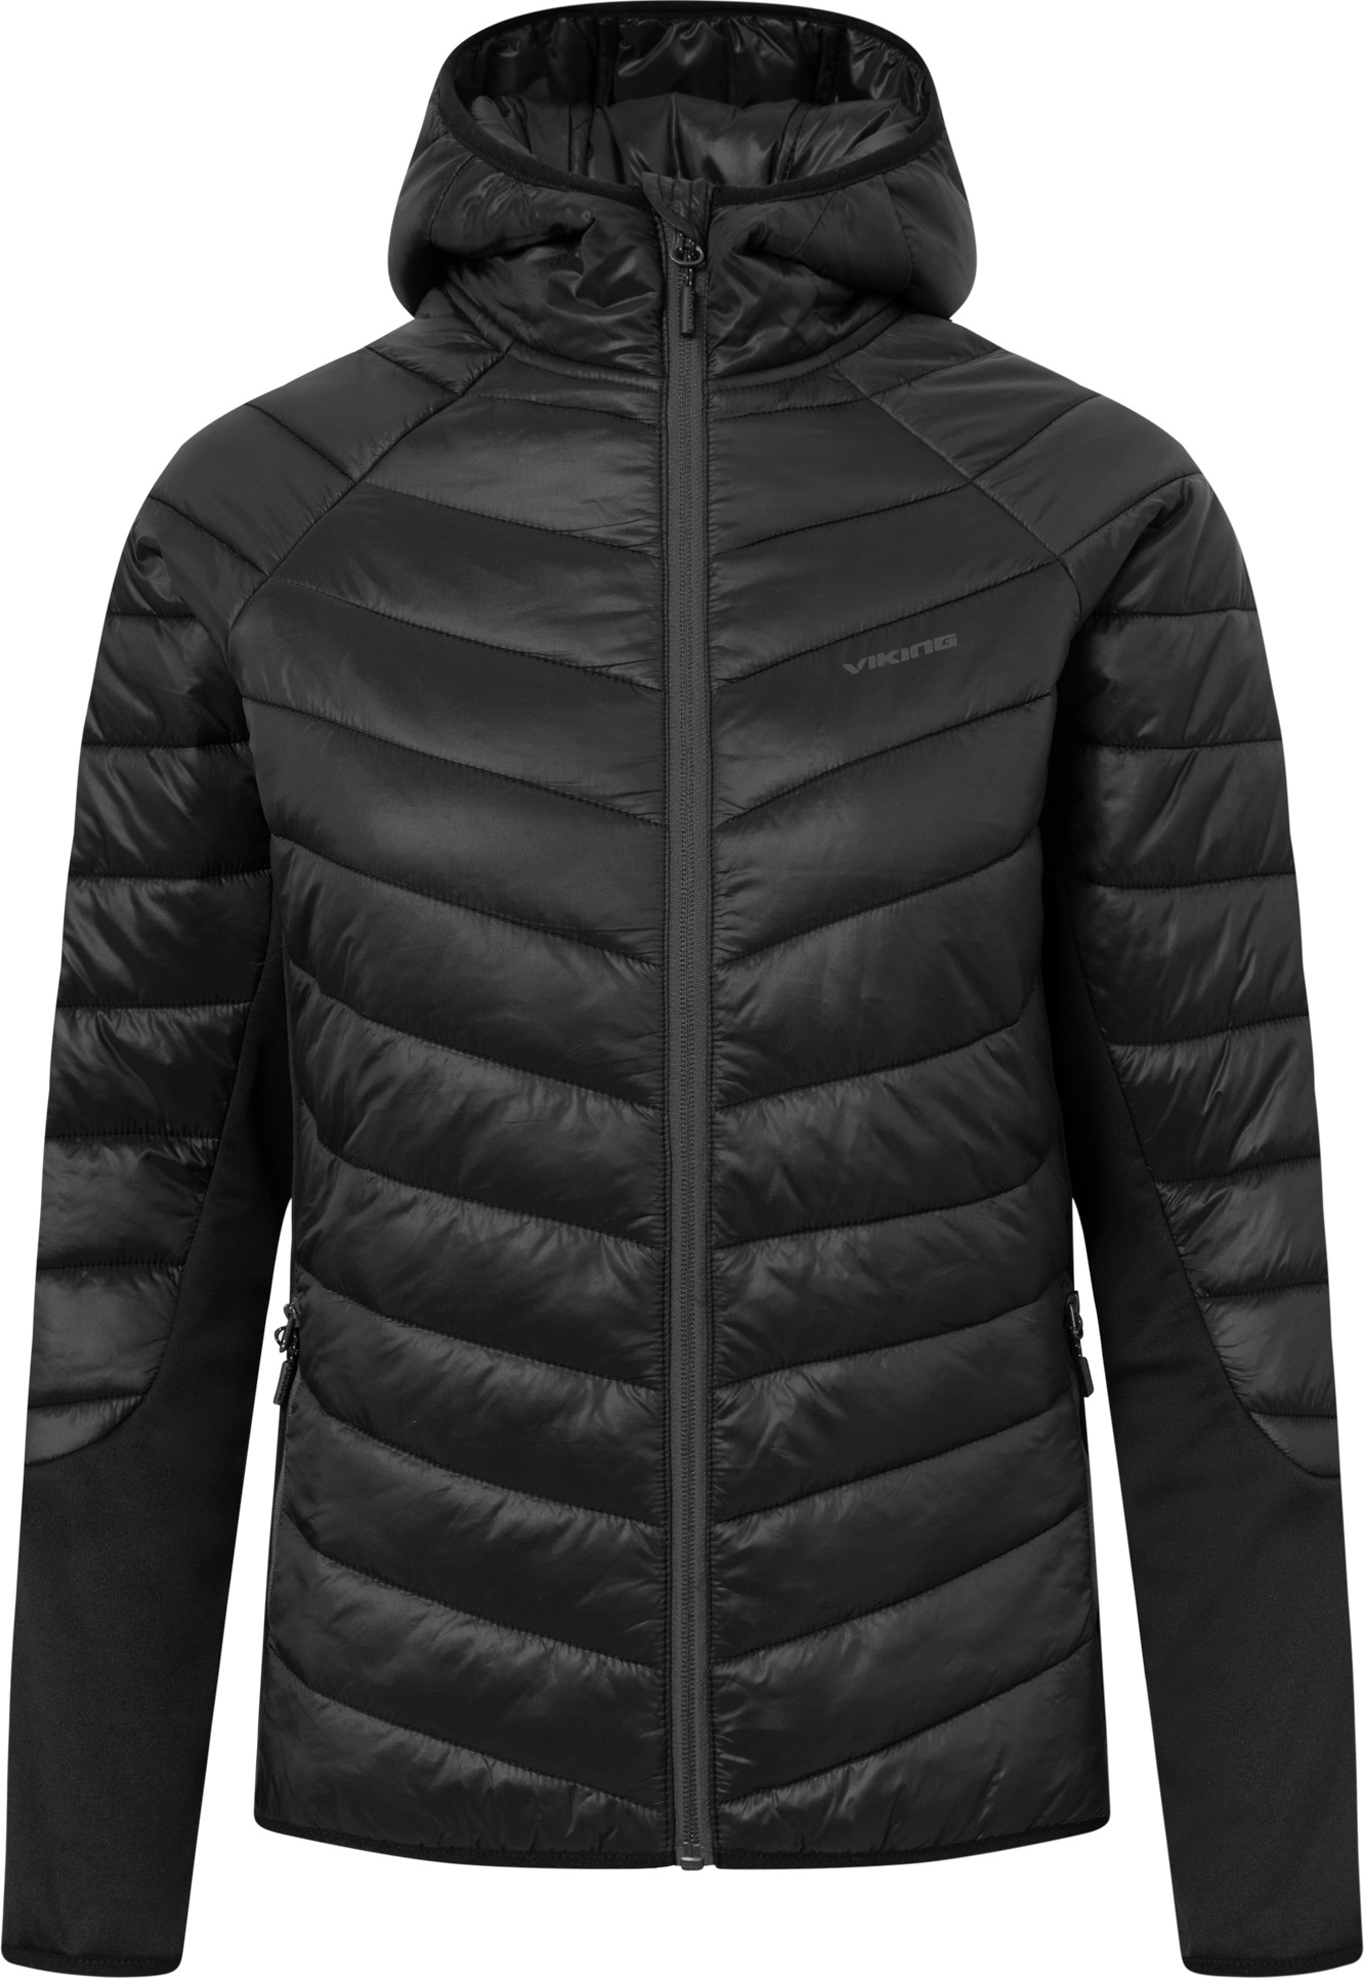 Dámská outdoorová bunda VIKING Becky Warm Pro černá Velikost: M